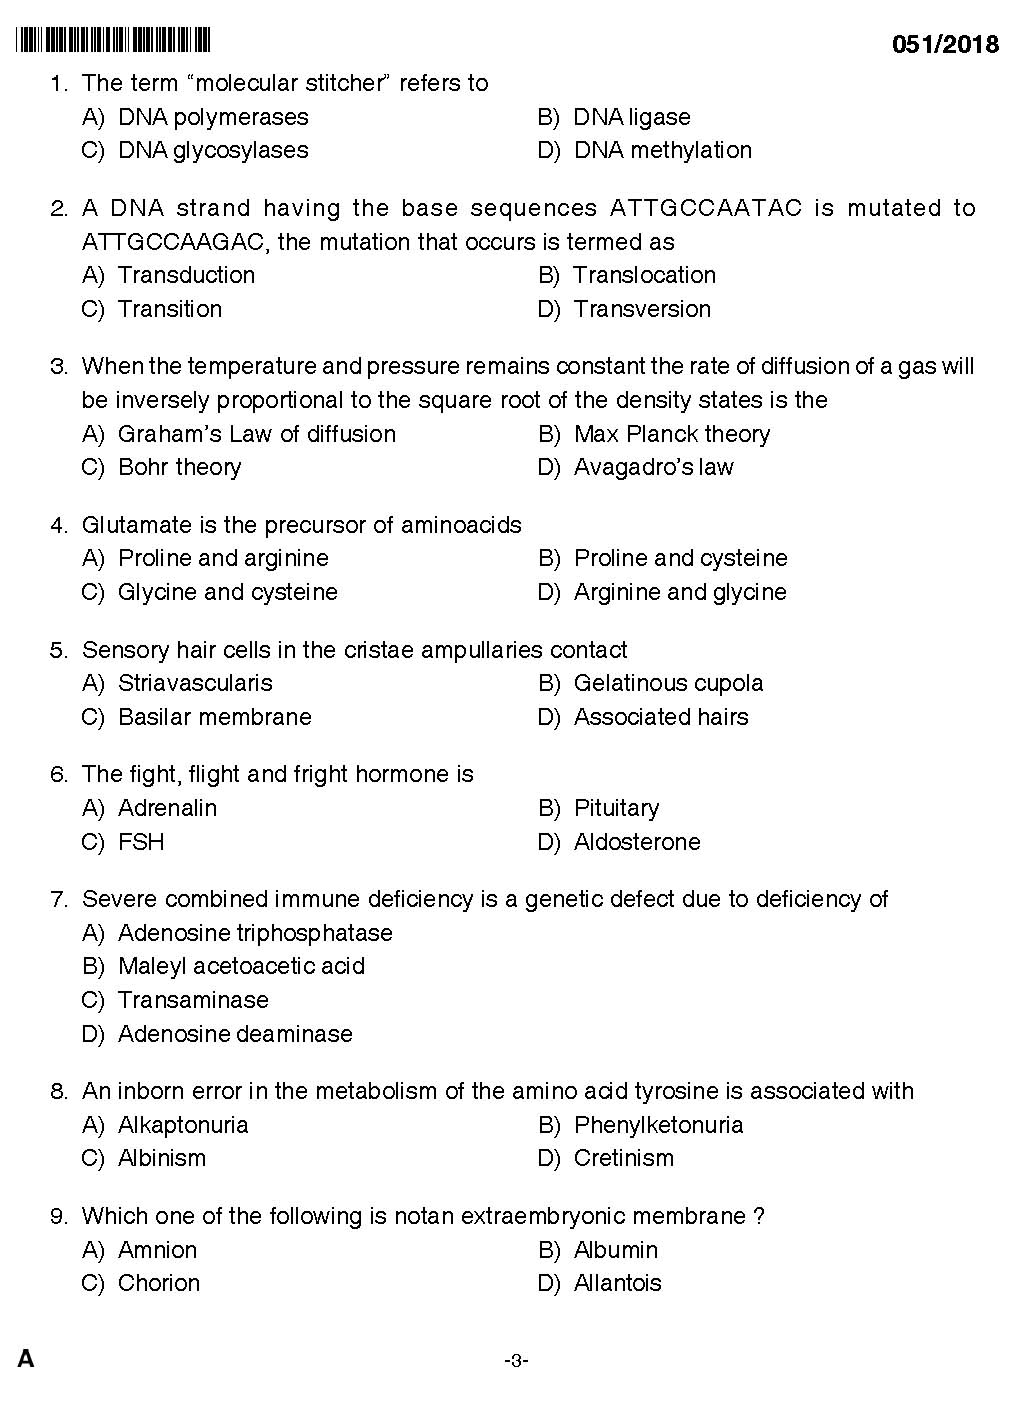 KPSC Higher Secondary School Teacher Exam Question 0512018 1